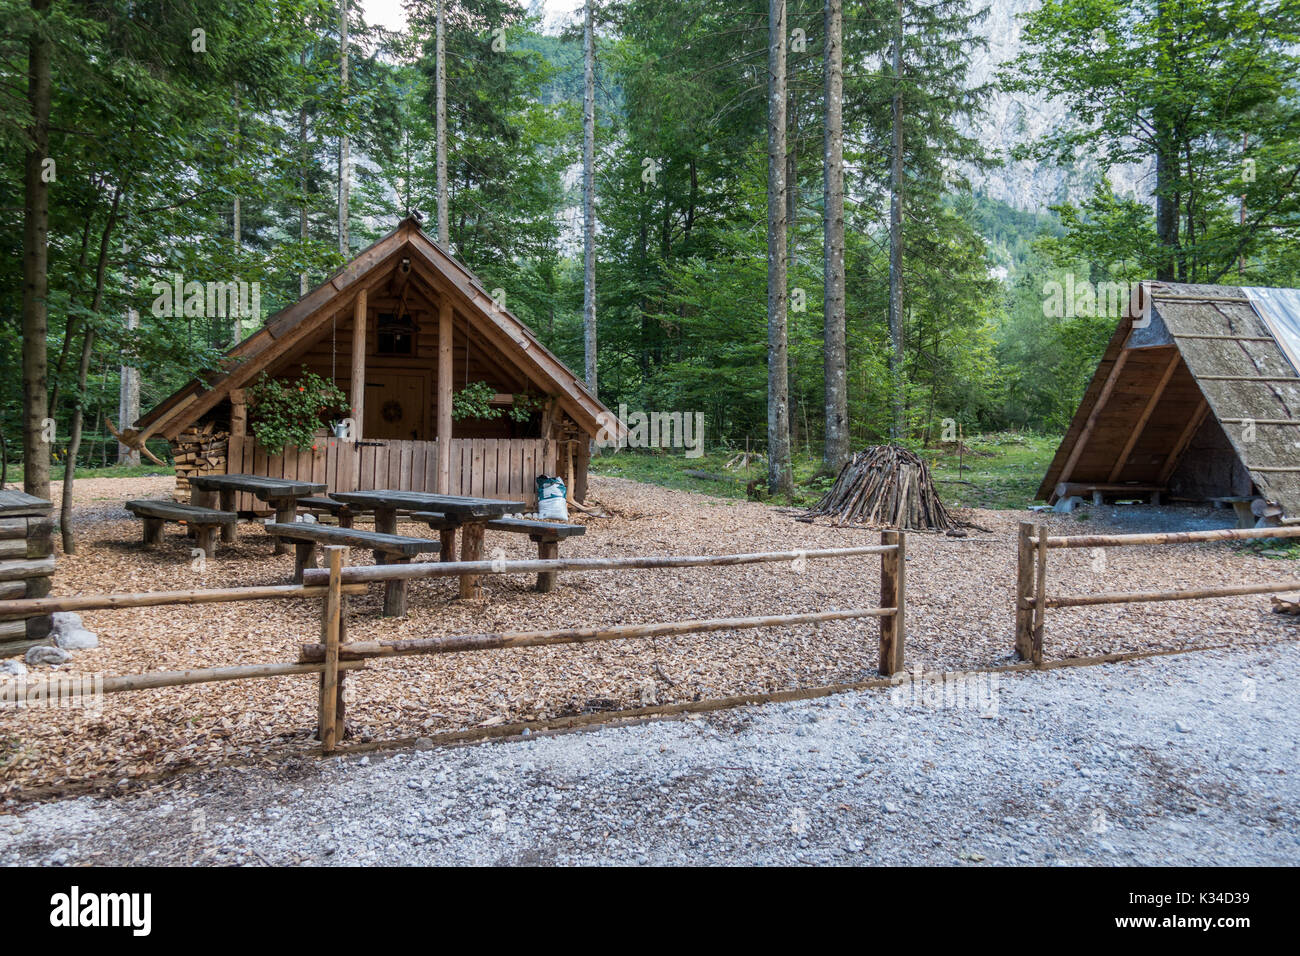 Chalet de montagne, cabane, maison à charbon dans les Alpes, situé dans la région de Robanov kot, la Slovénie, la randonnée et escalade lieu populaire avec picturescue view Banque D'Images